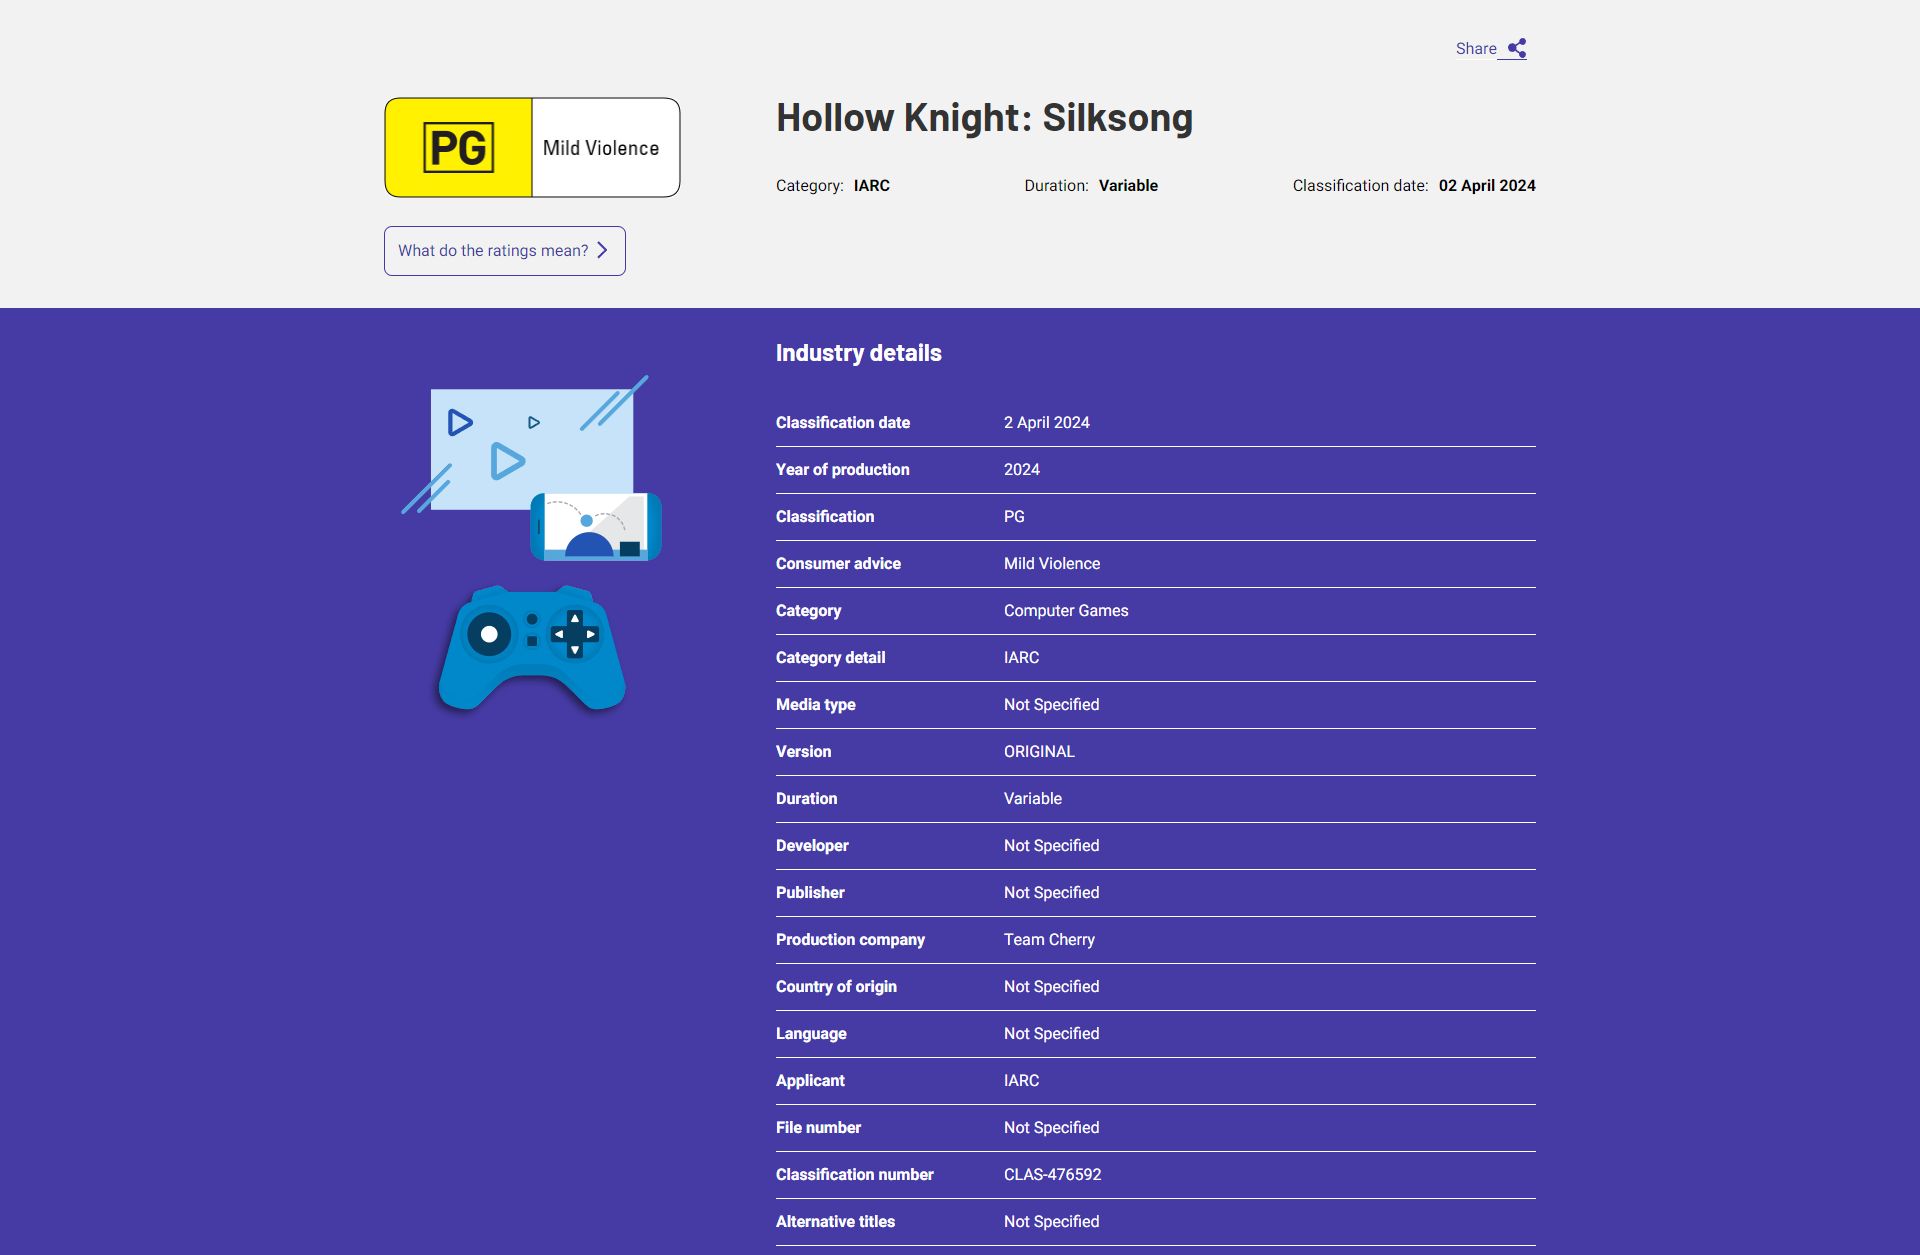 Notícias sobre a data de lançamento de Hollow Knight Silksong